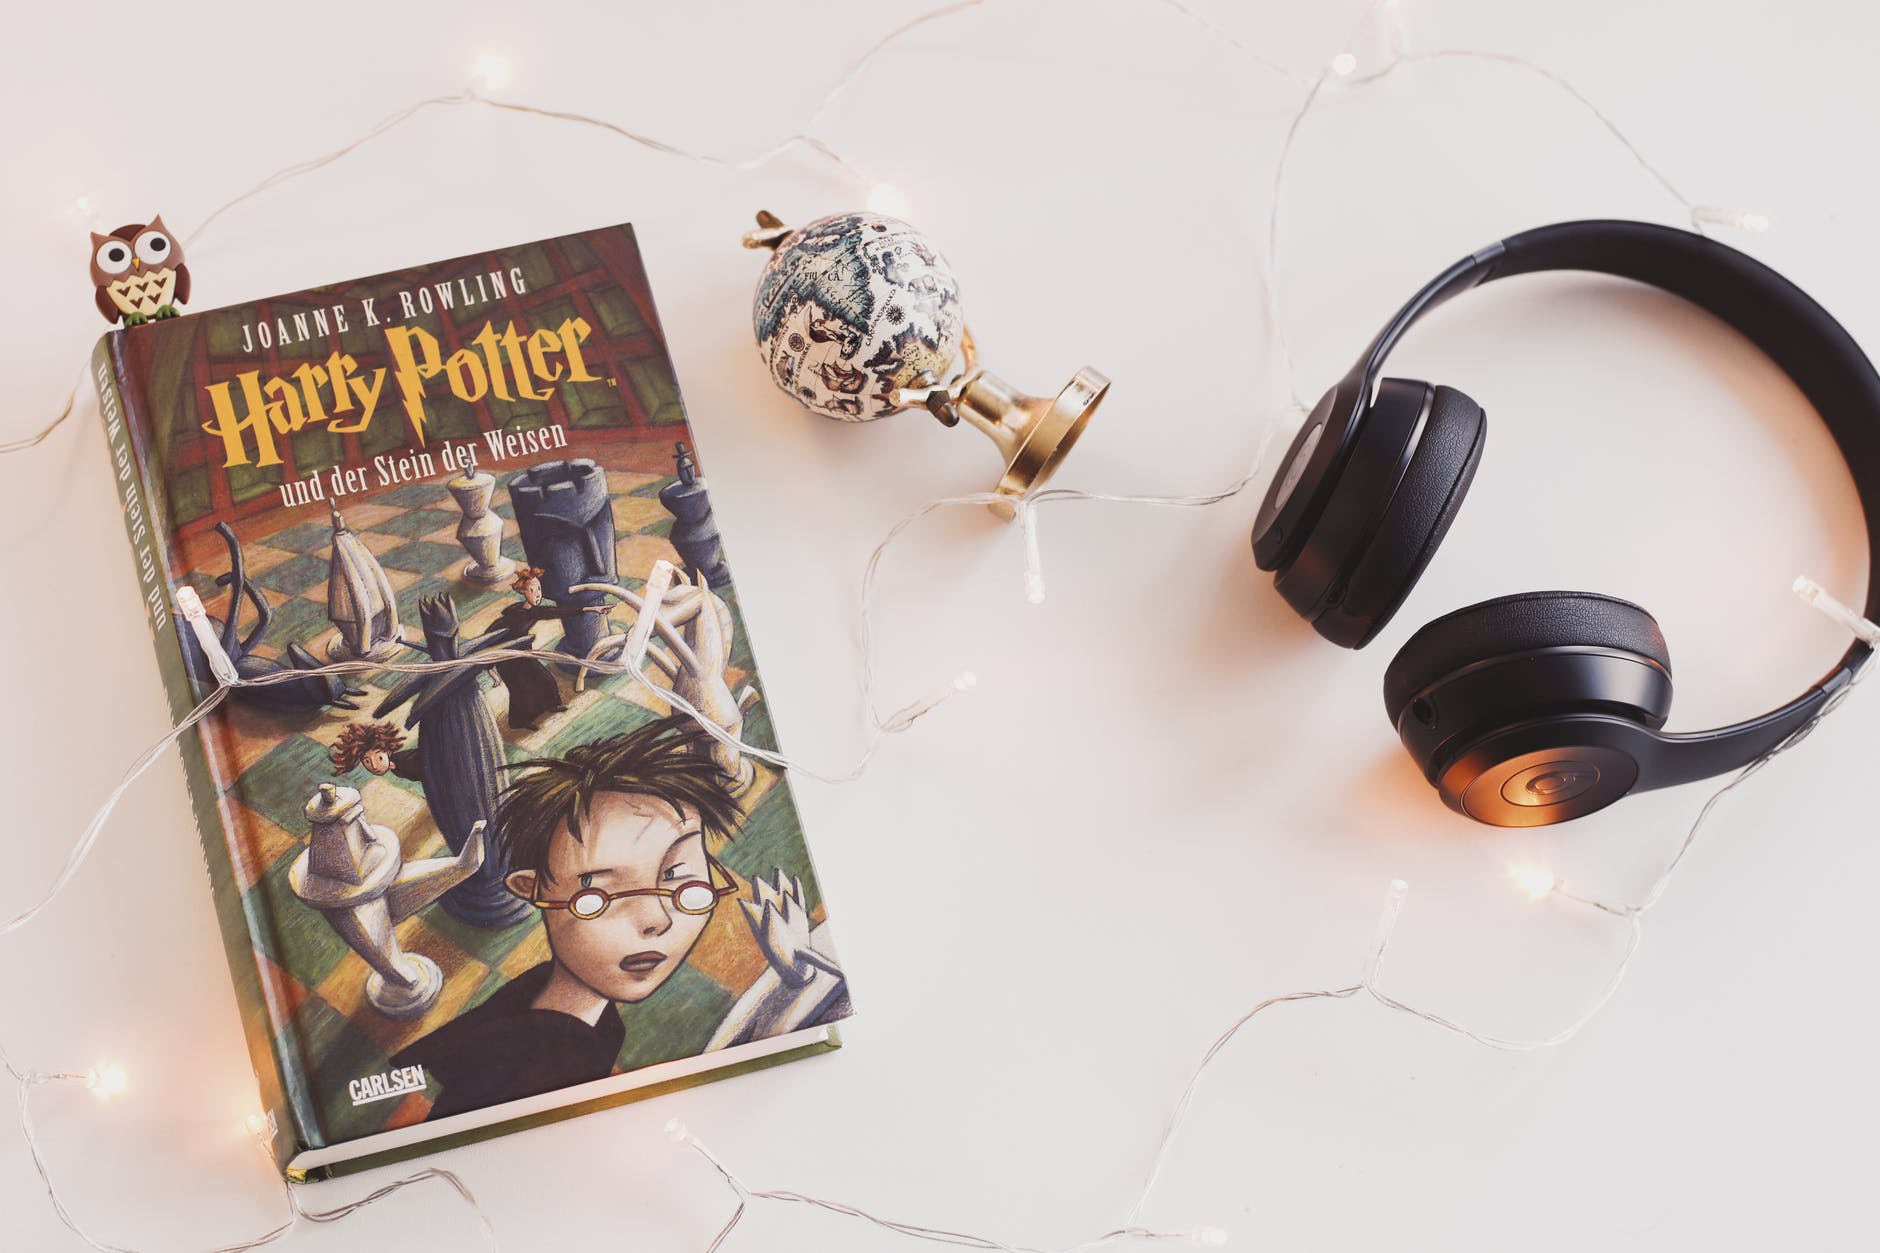 MyBook и «ЛитРес» перестанут продавать электронные версии книг о «Гарри Поттере»